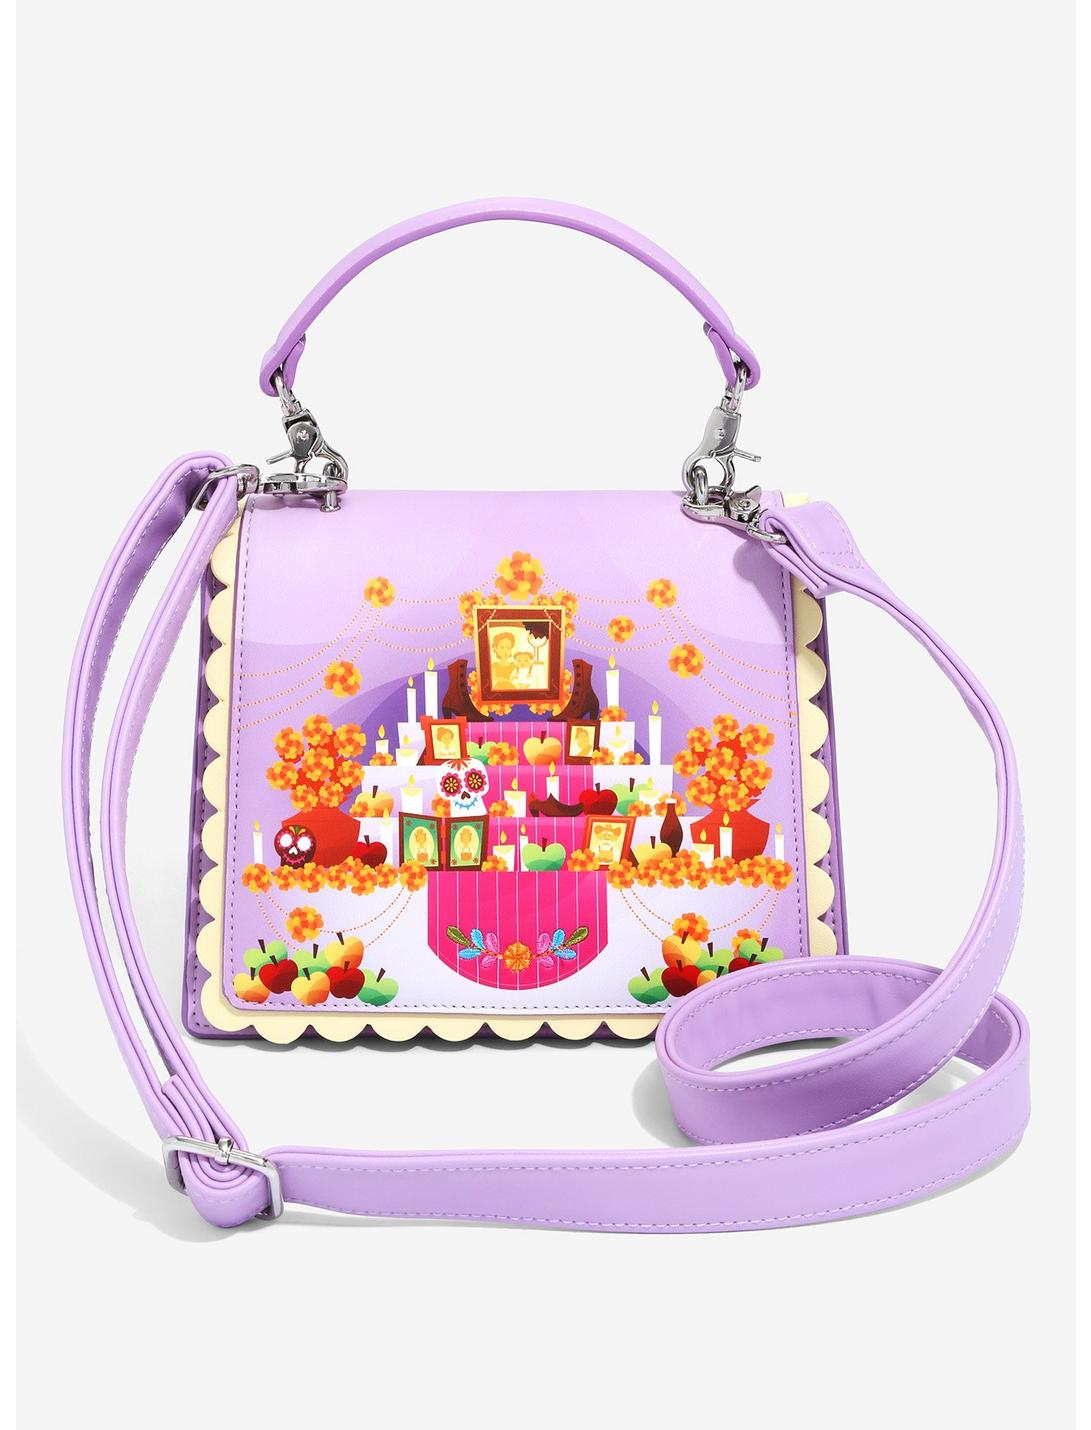 Loungefly Disney Pixar Coco Ofrenda Handbag - BoxLunch Exclusive